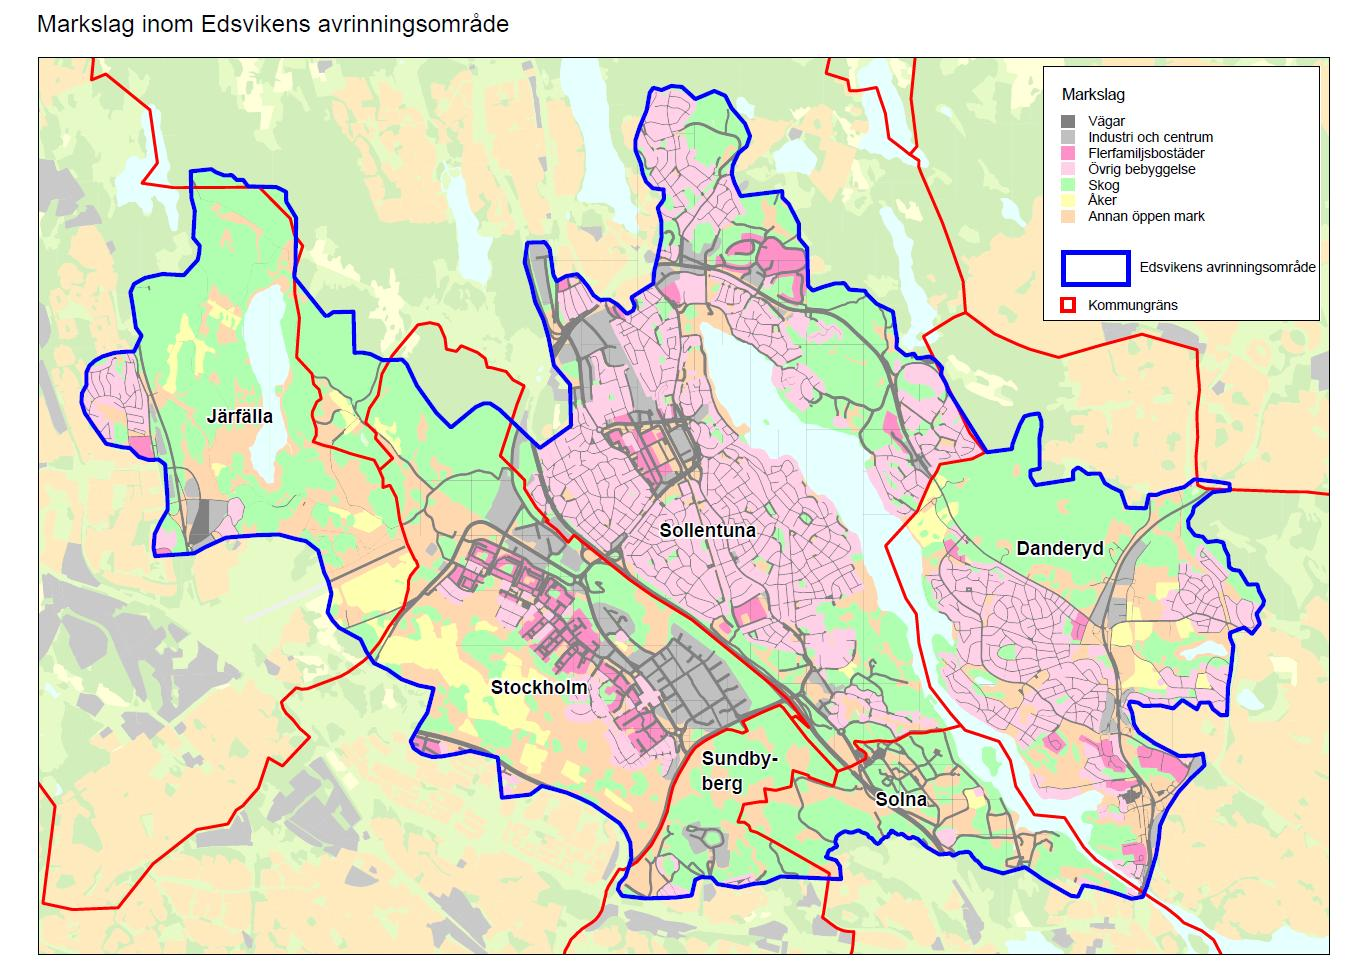 Bedömd markanvändning inom Edsvikens avrinningsområde, vilken utgjort underlag för föreslagen kostnadsfördelning.